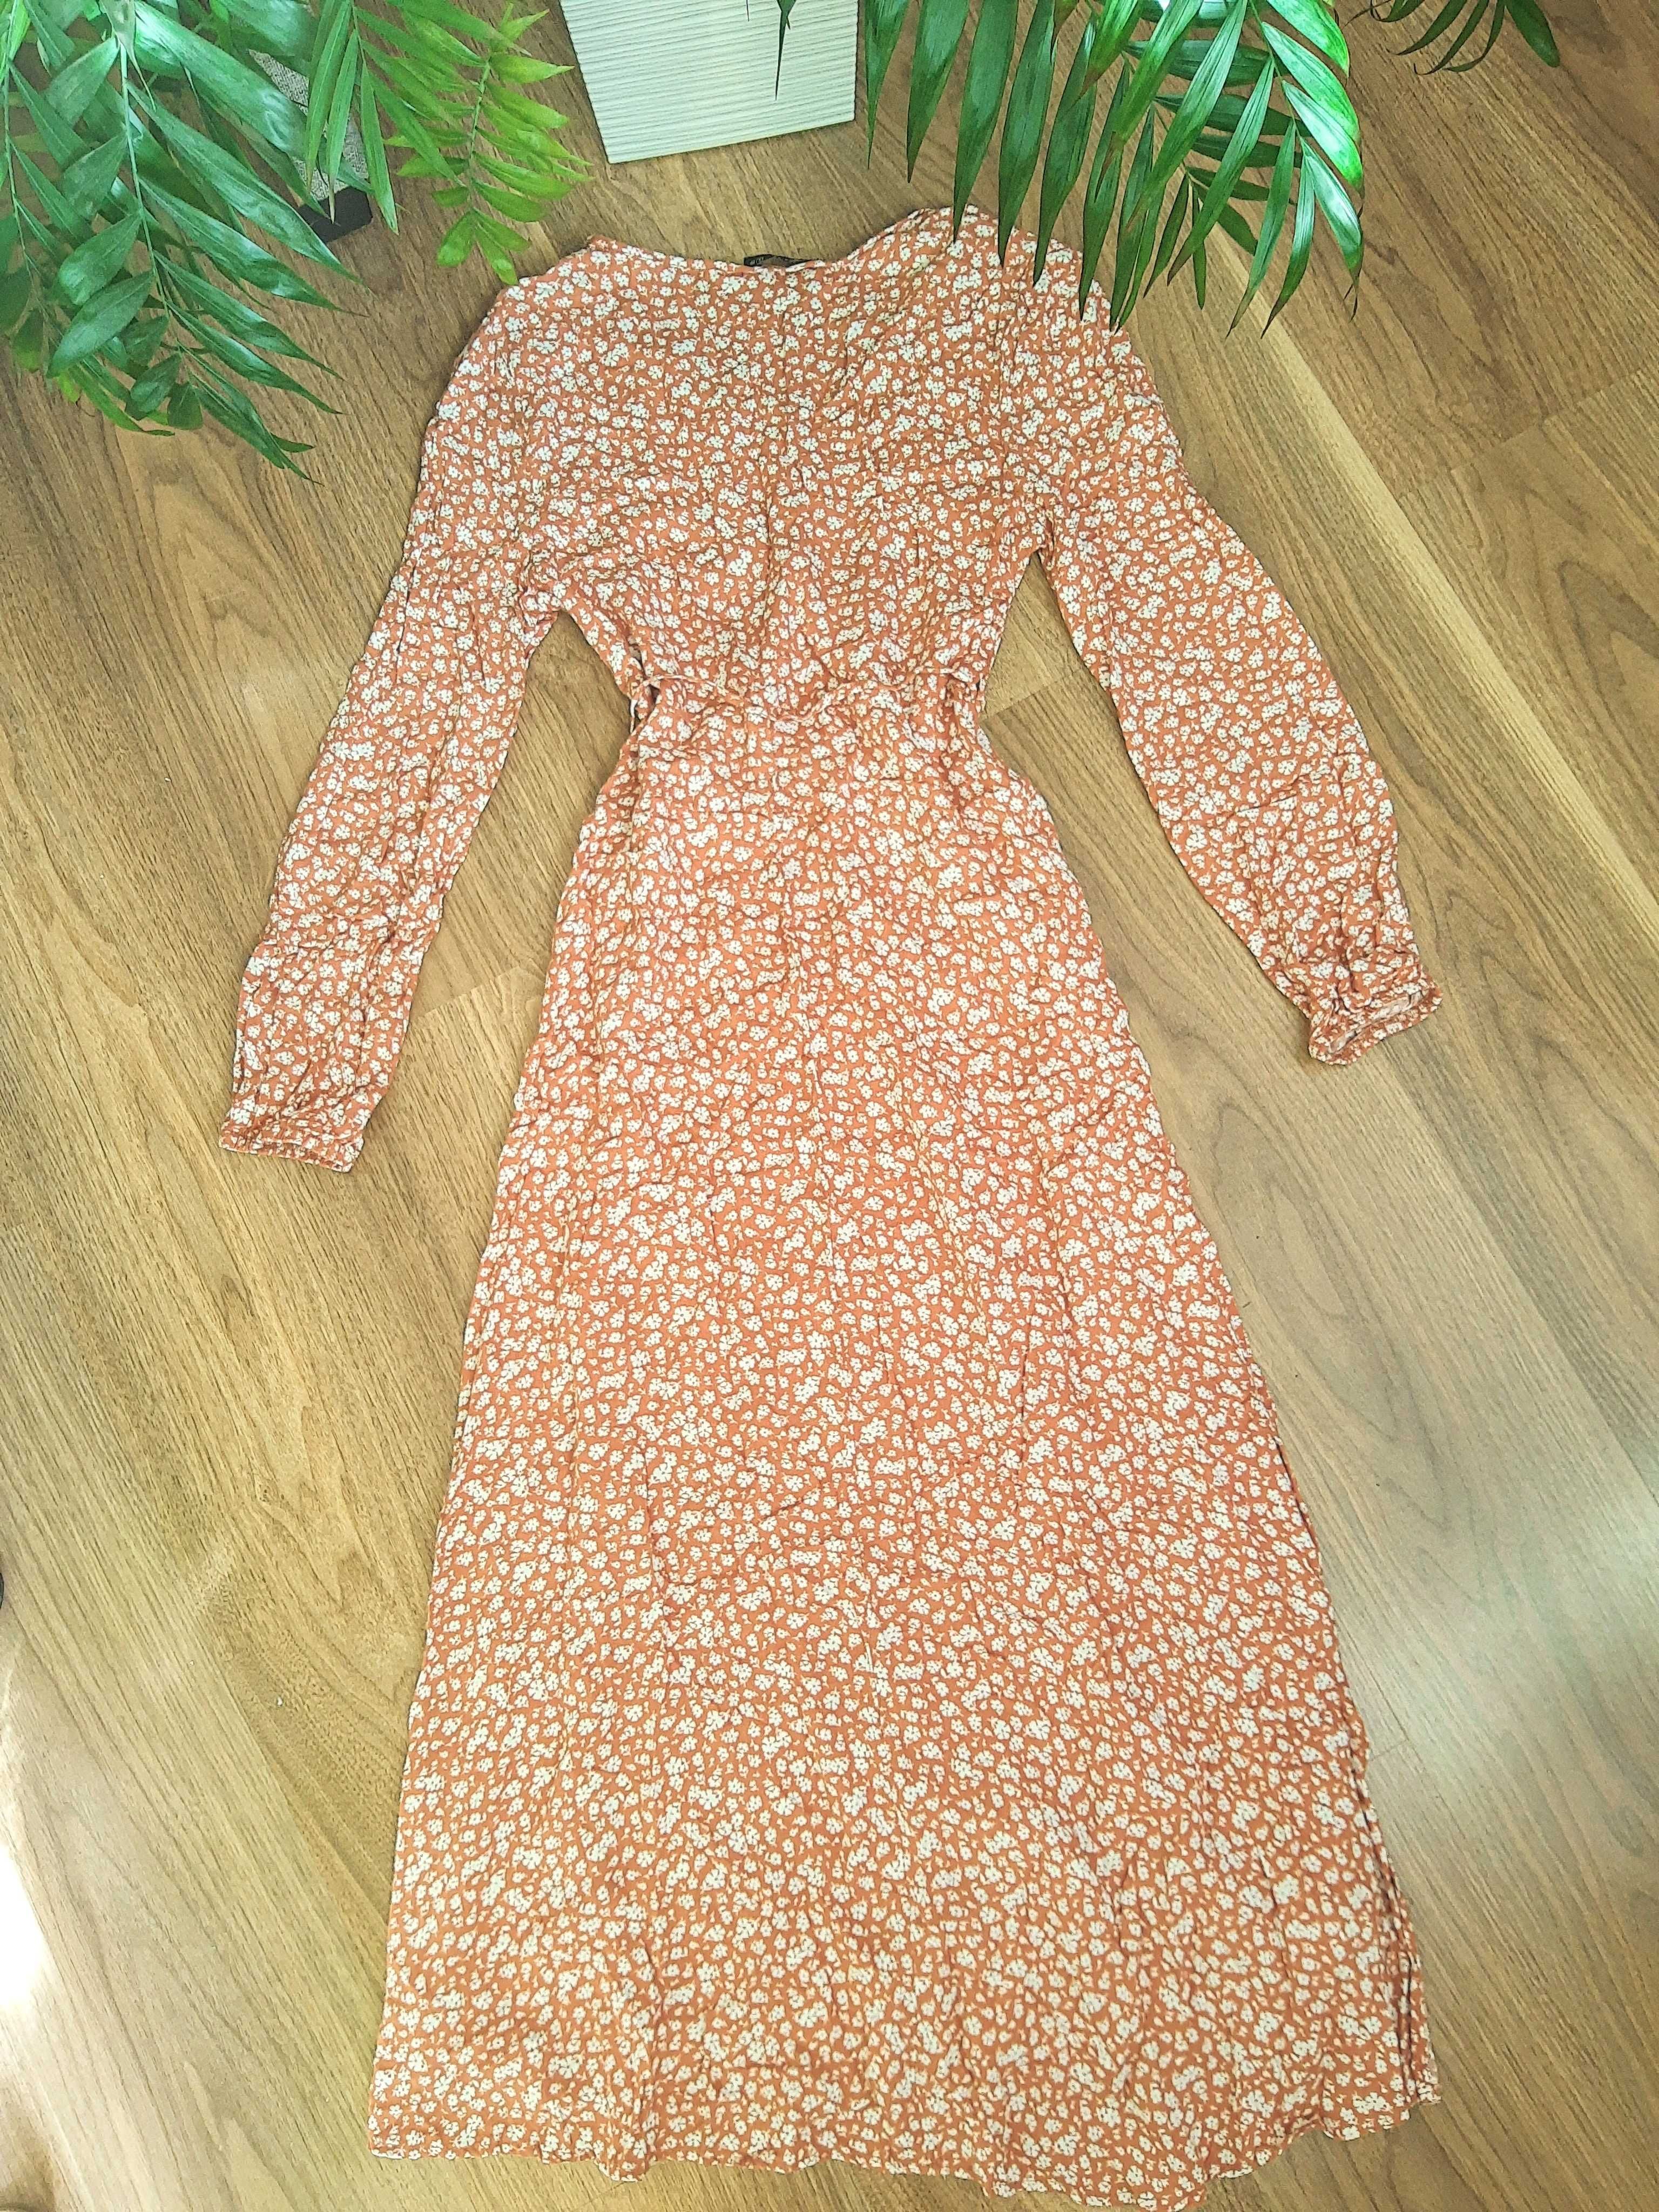 Kopertowa cynamonowa sukienka XS midi w kwiaty długi rękaw